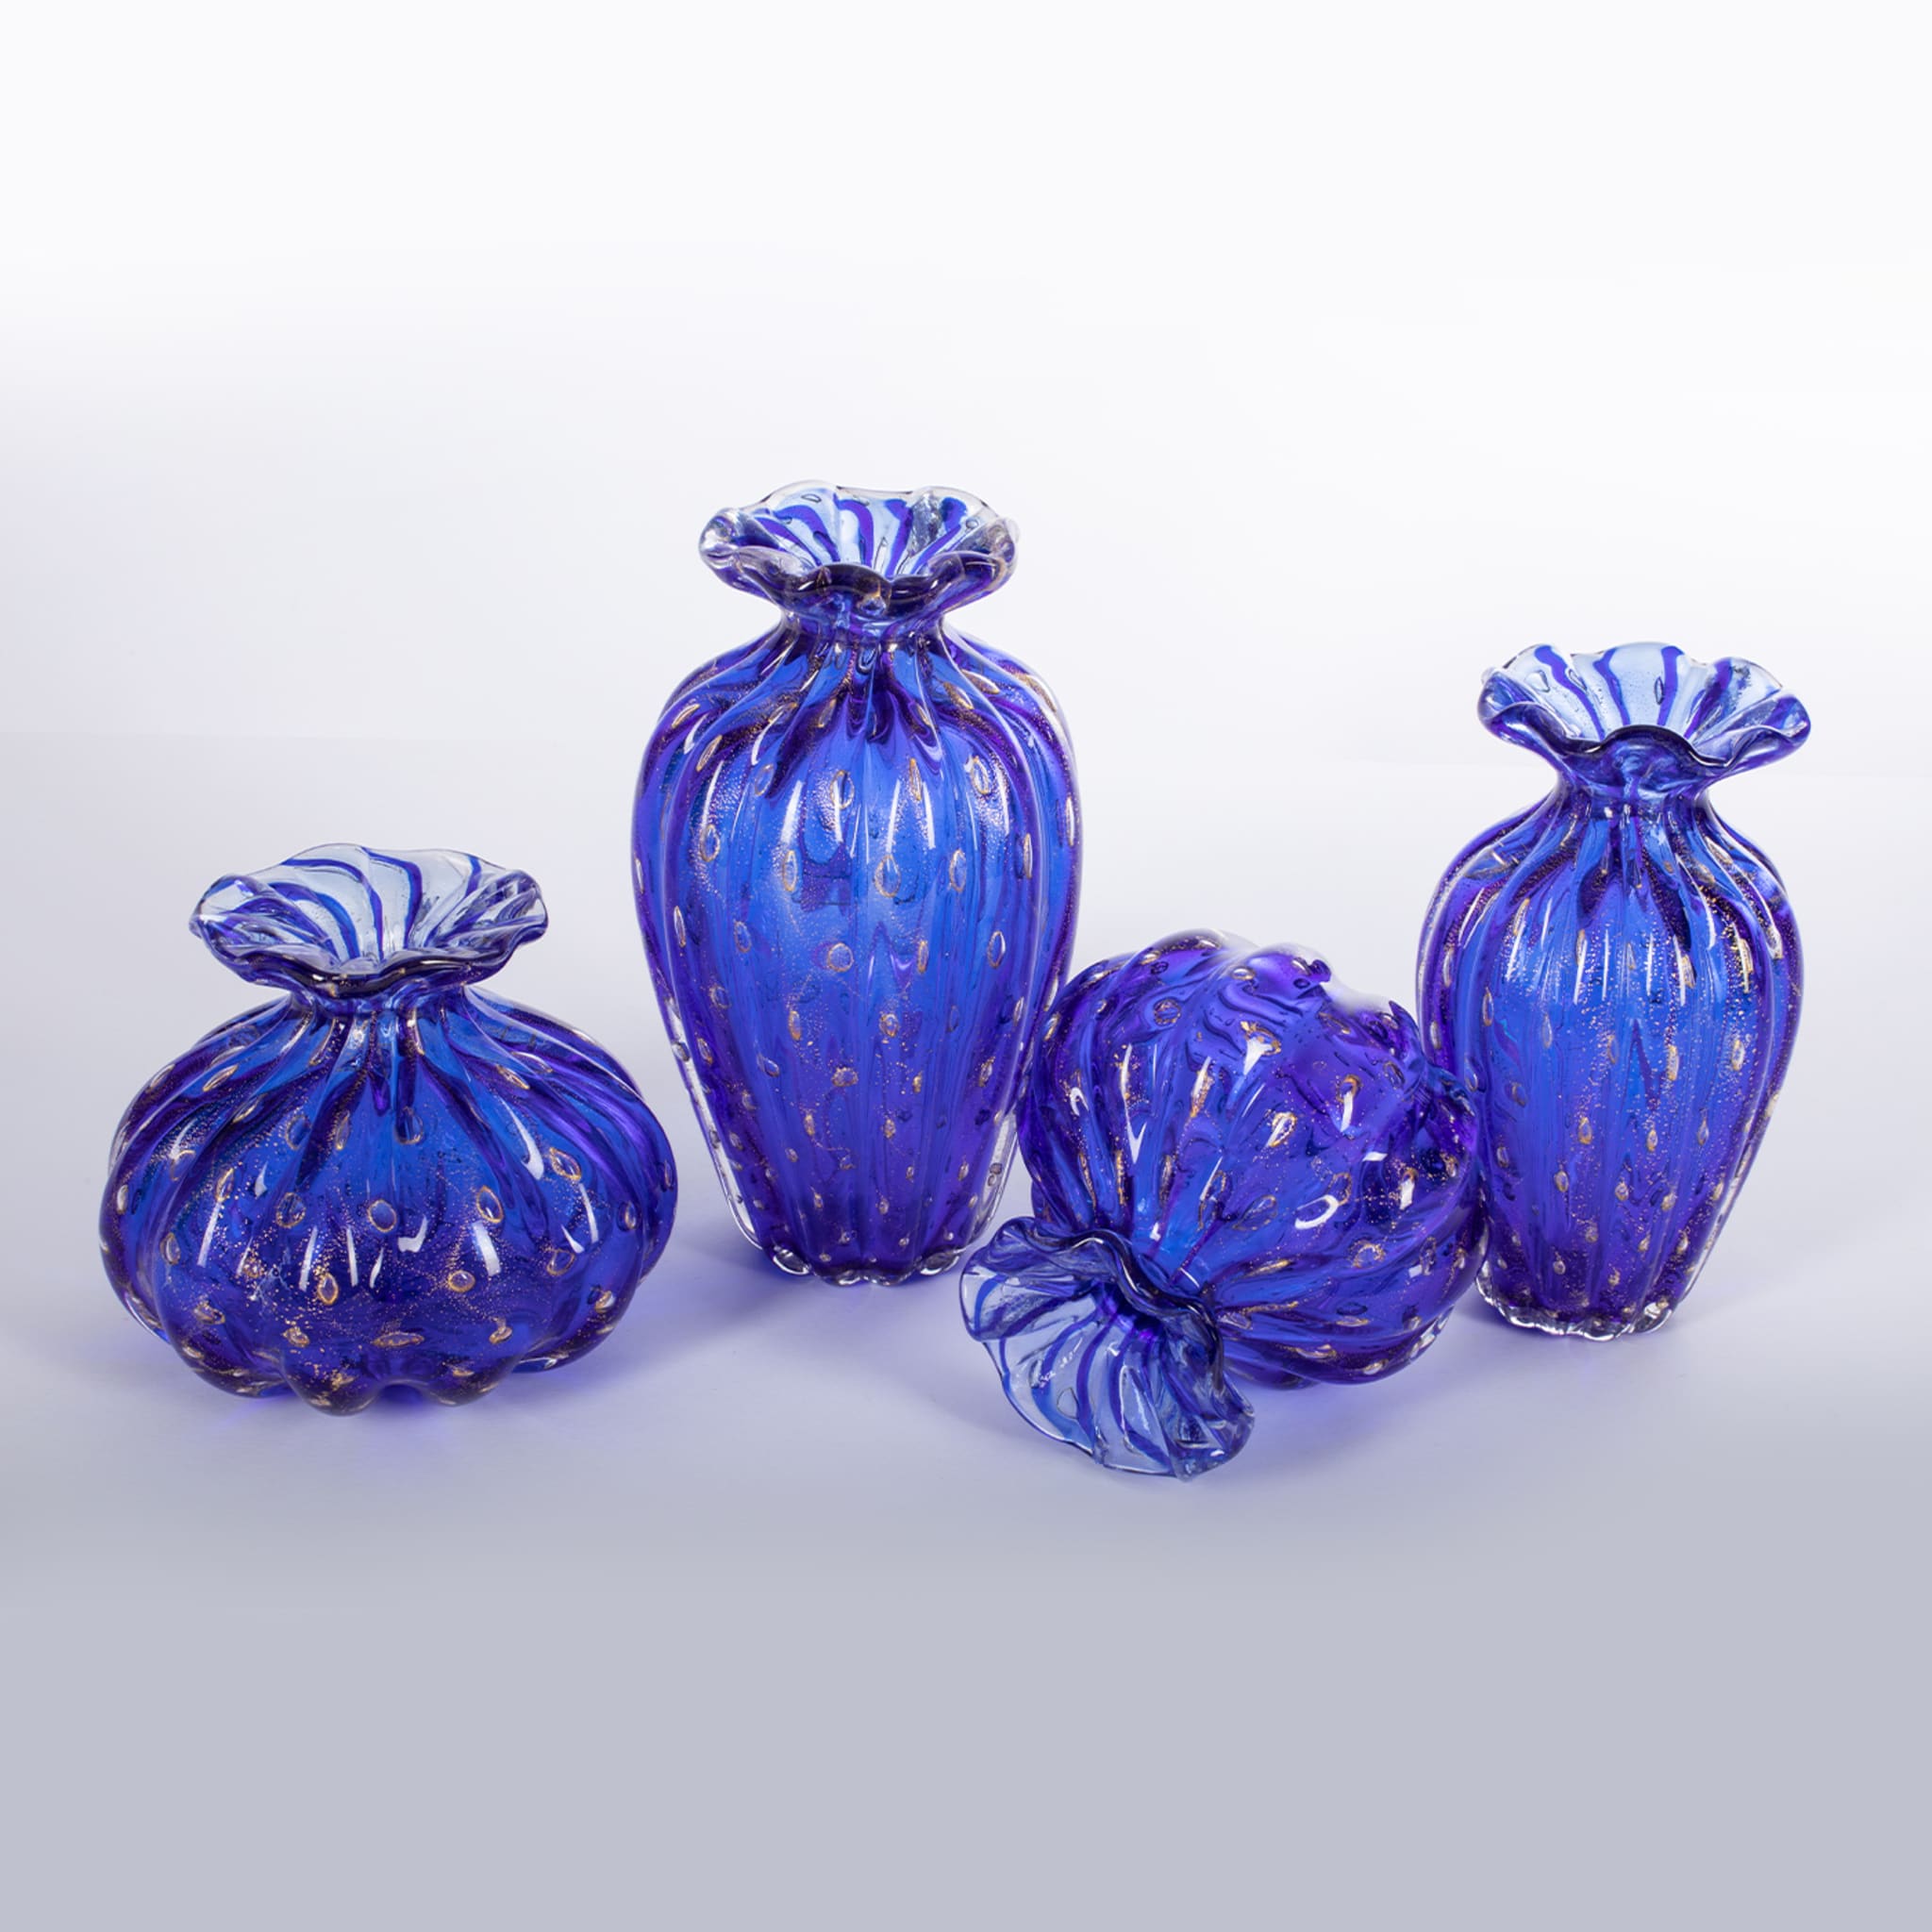 1950 Satz von 2 blauen Vasen mit Goldblasen - Alternative Ansicht 1